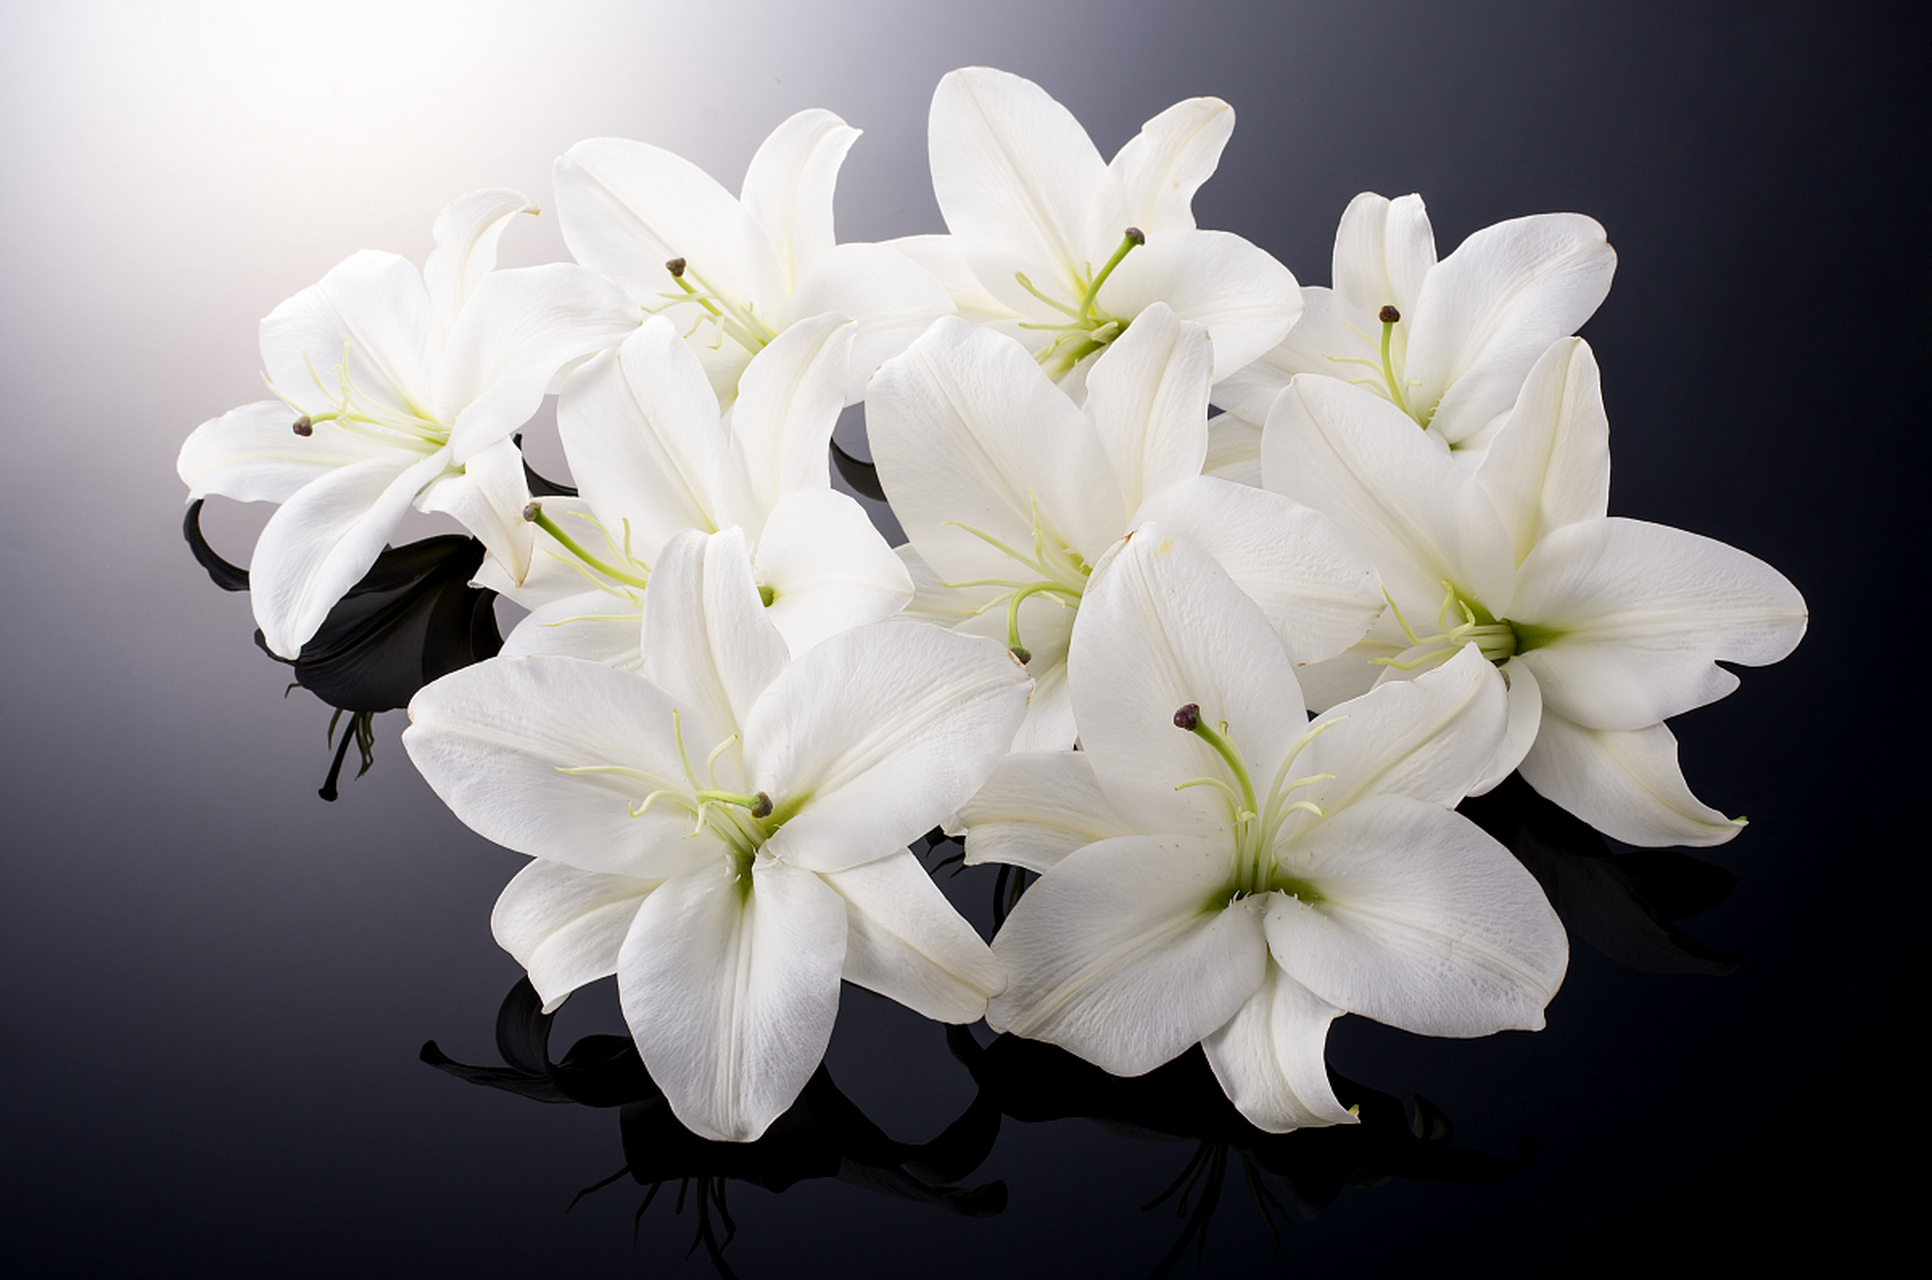 白色百合花,代表纯洁与爱情,象征贞操与忠诚,神圣且充满母爱